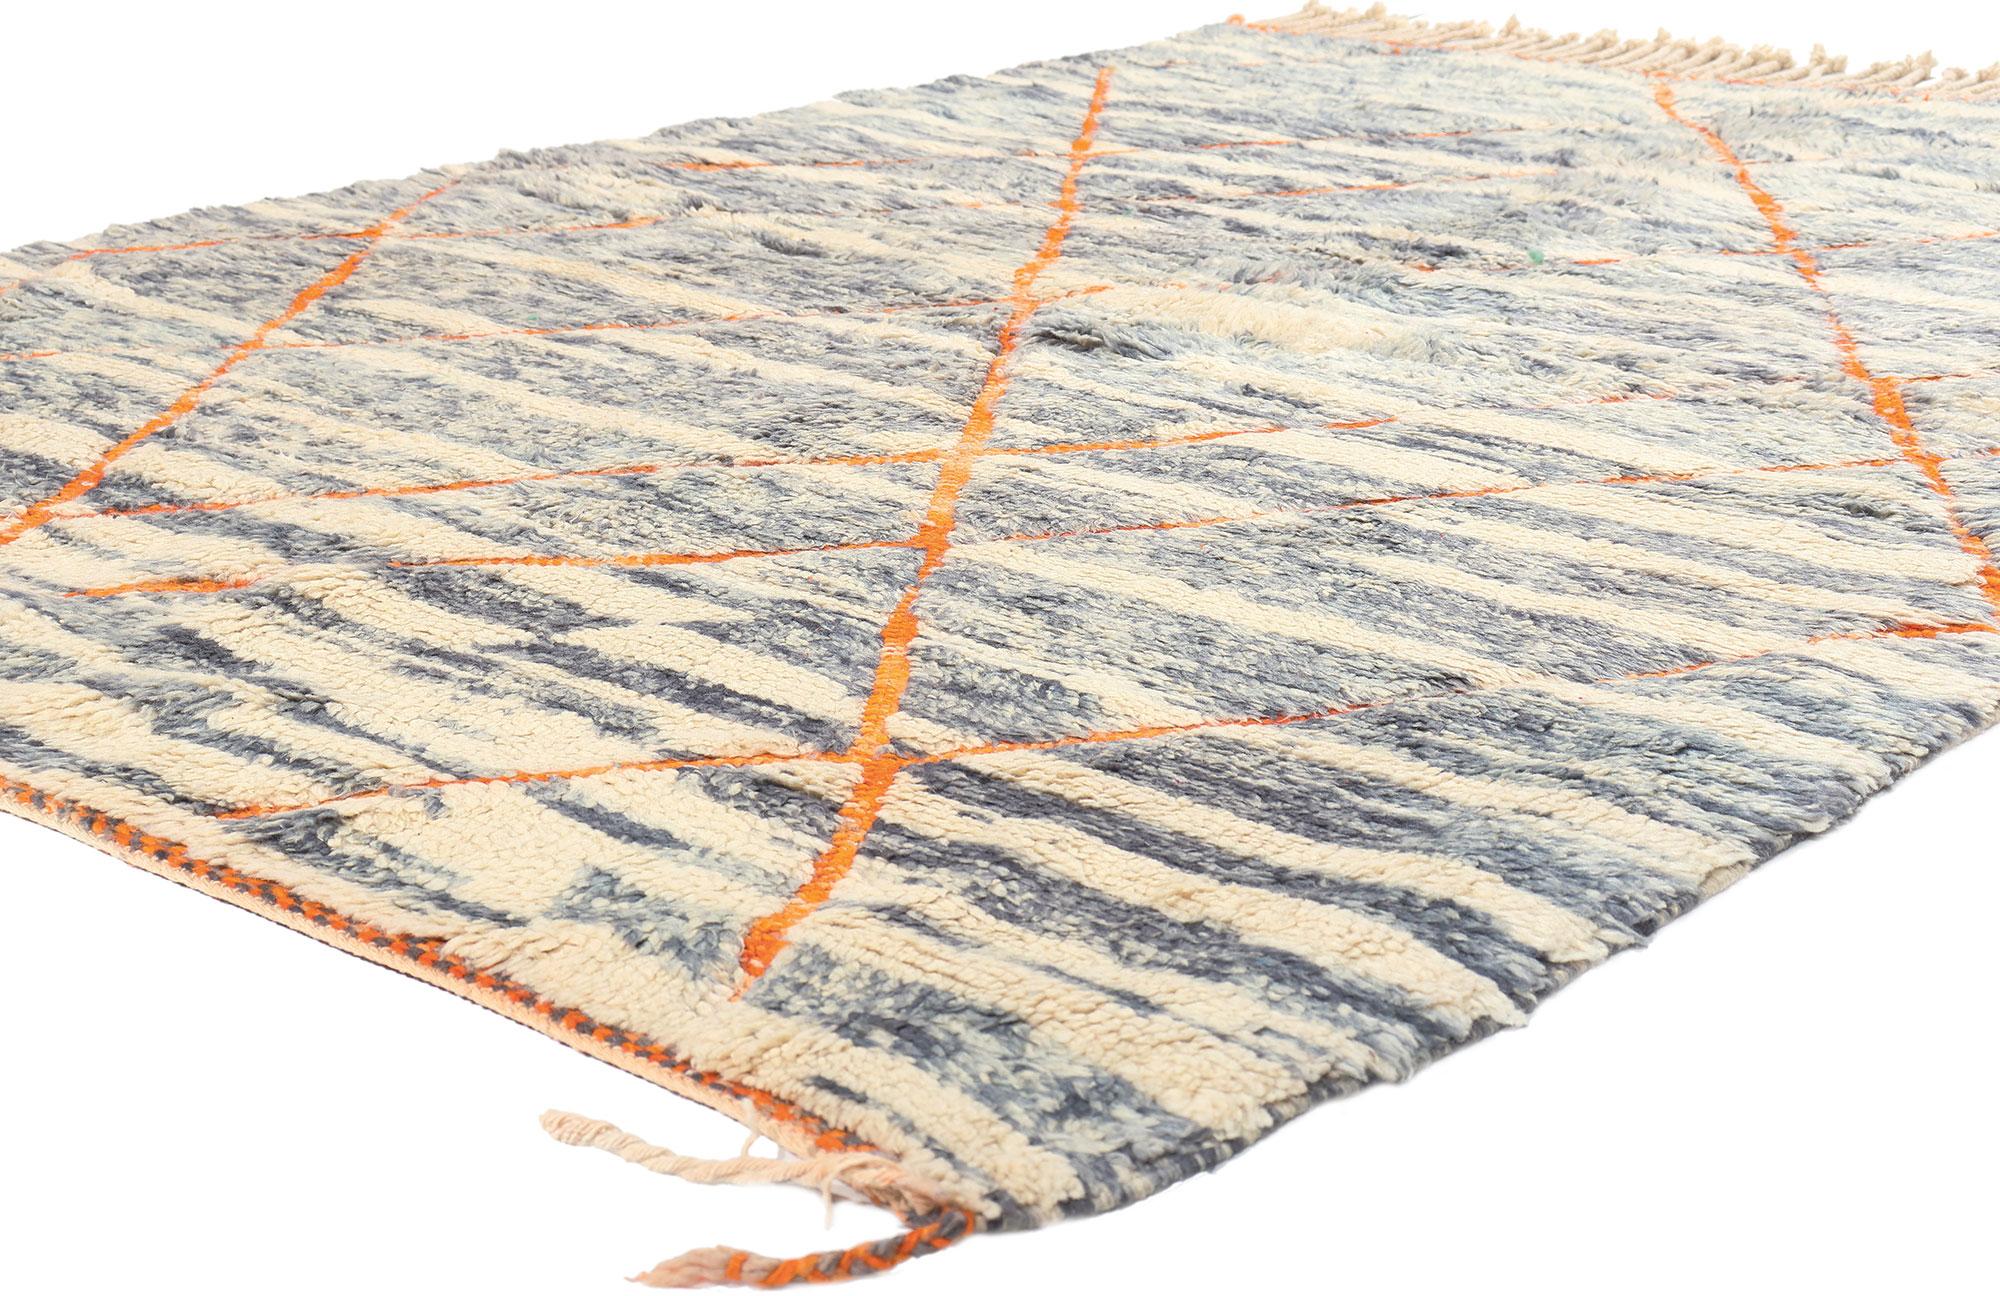 20993 Modern Beni Mrirt Marokkanischer Teppich, 05'09 x 08'00. Die Beni Mrirt Rugs, die von den geschickten Kunsthandwerkern des Beni Mrirt-Stammes im marokkanischen Atlasgebirge hergestellt werden, sind bekannt für ihre plüschige Textur, die